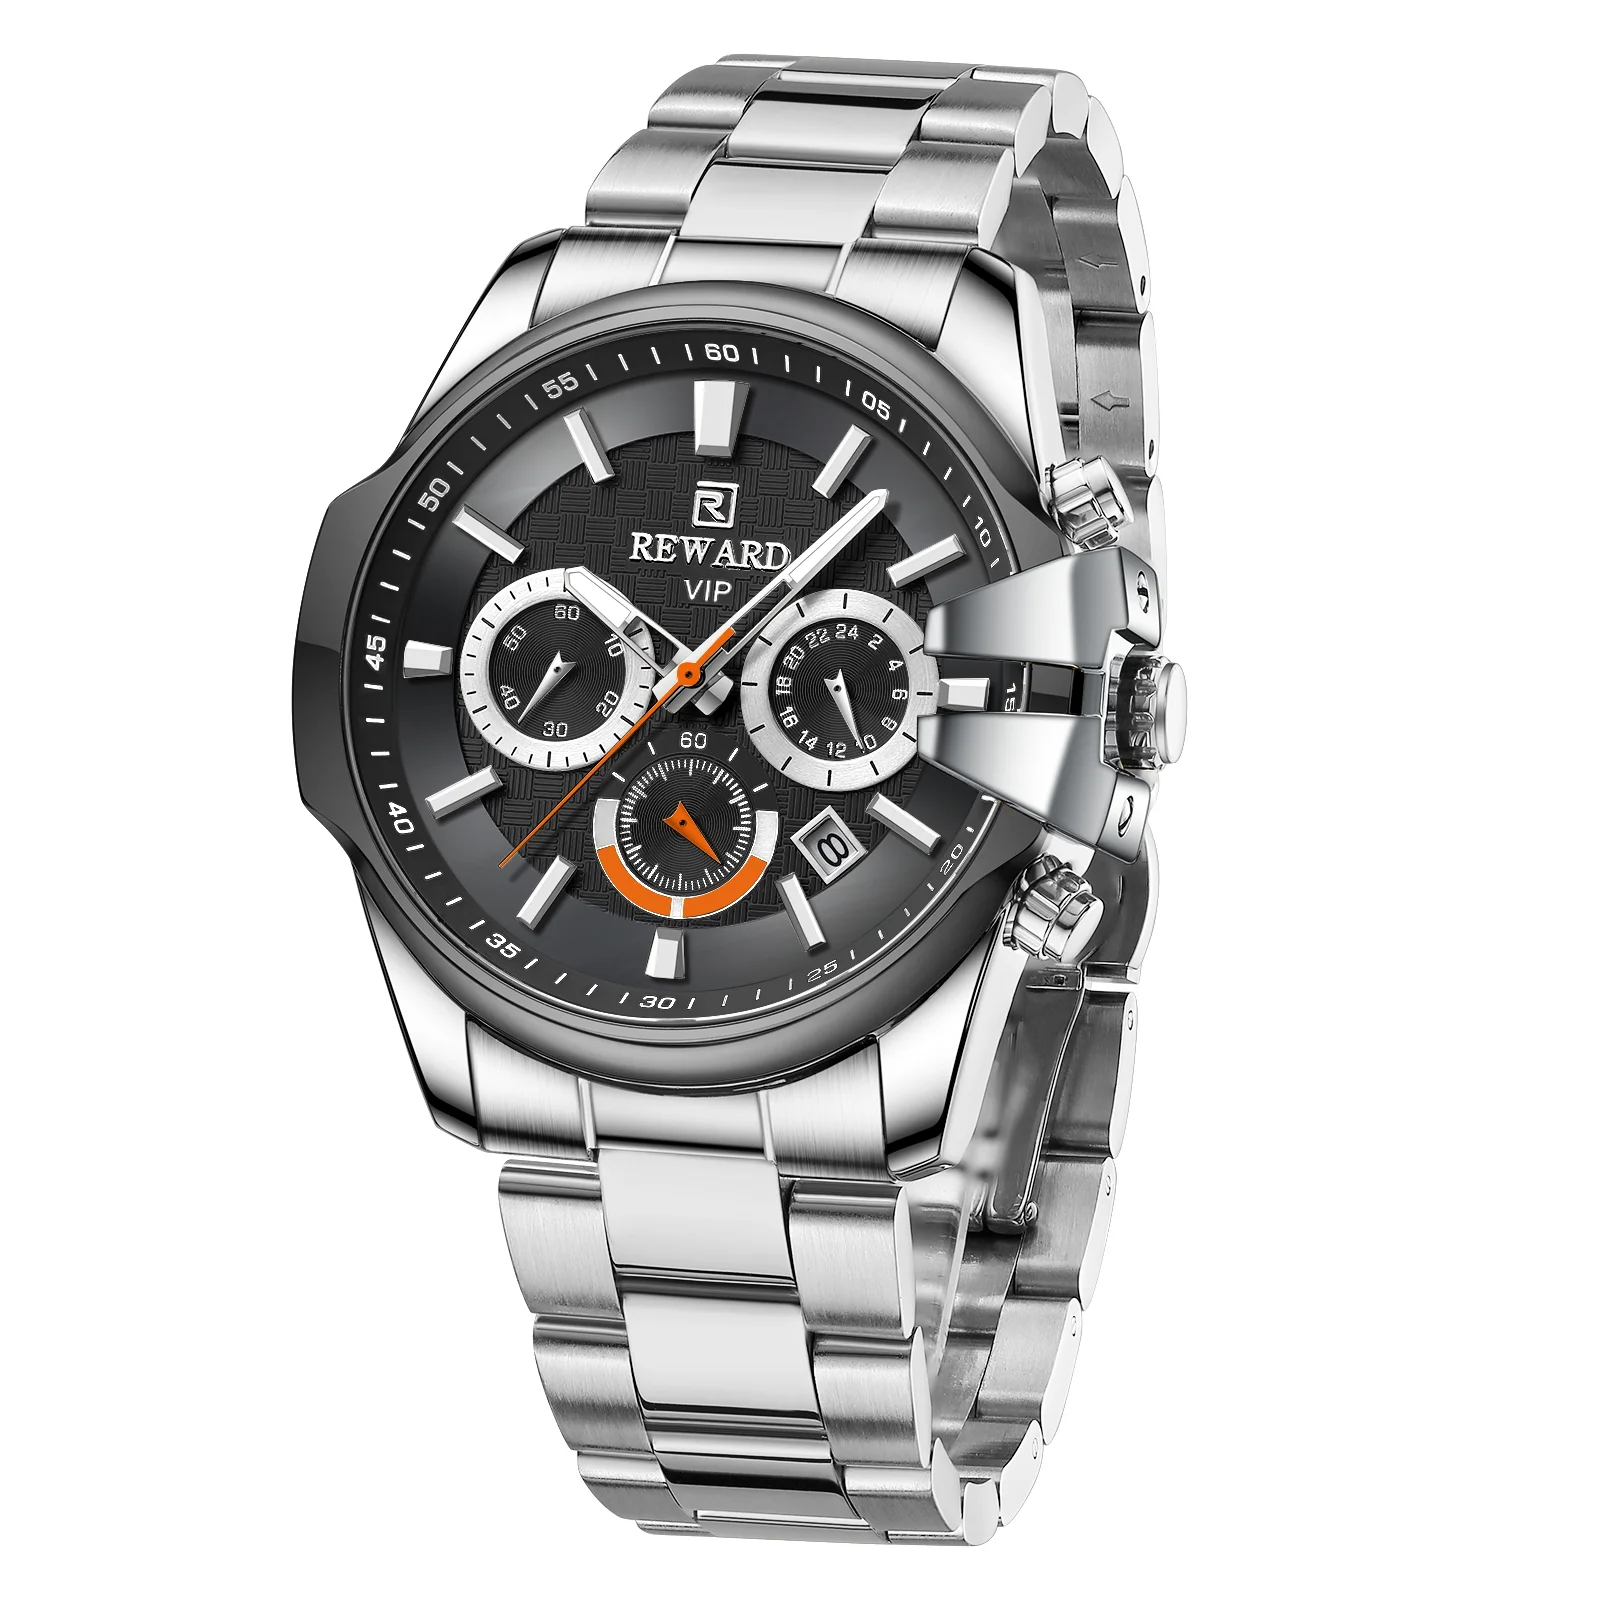 New Reward Vip Watch Man Luxury Unique Case Design Stainless Steel Fashion Business High Quality Watches Men Wrist RD81110M